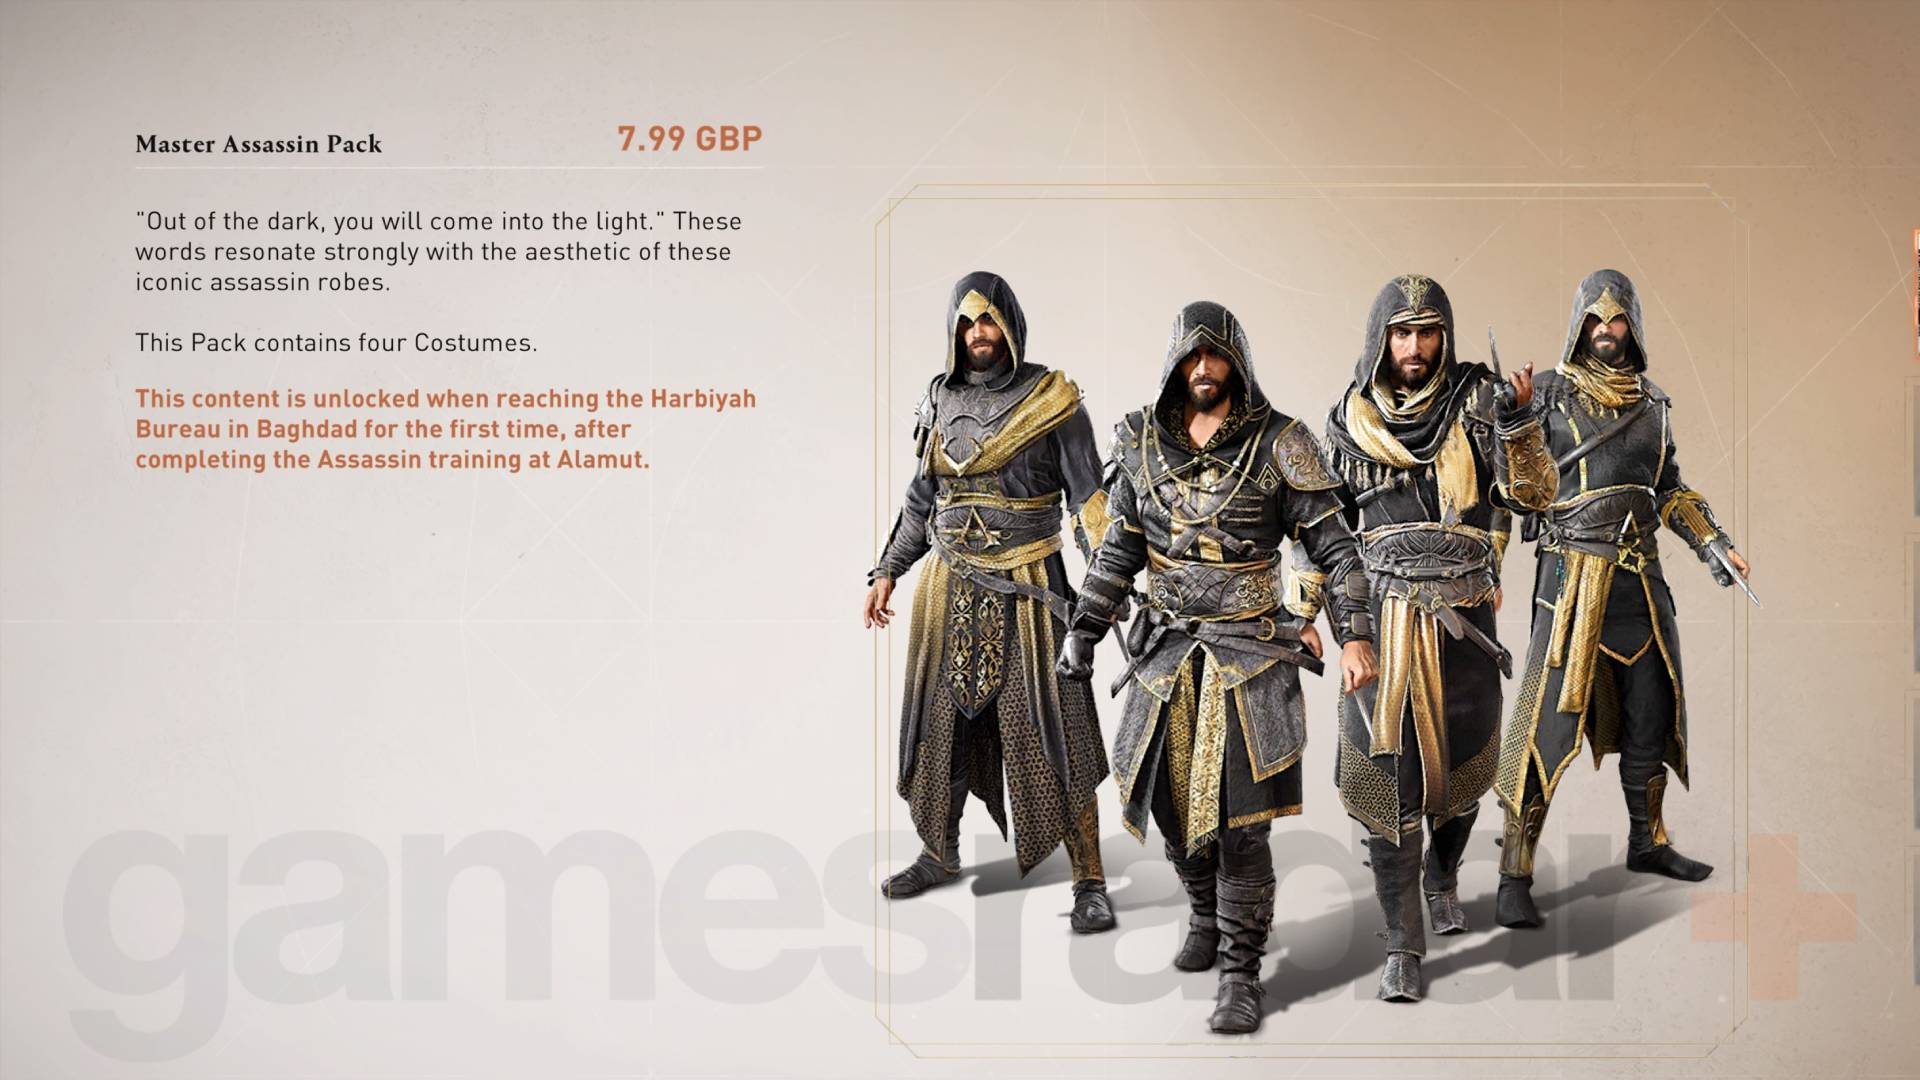 Assassin's Creed Mirage Basim portant un costume de maître assassin